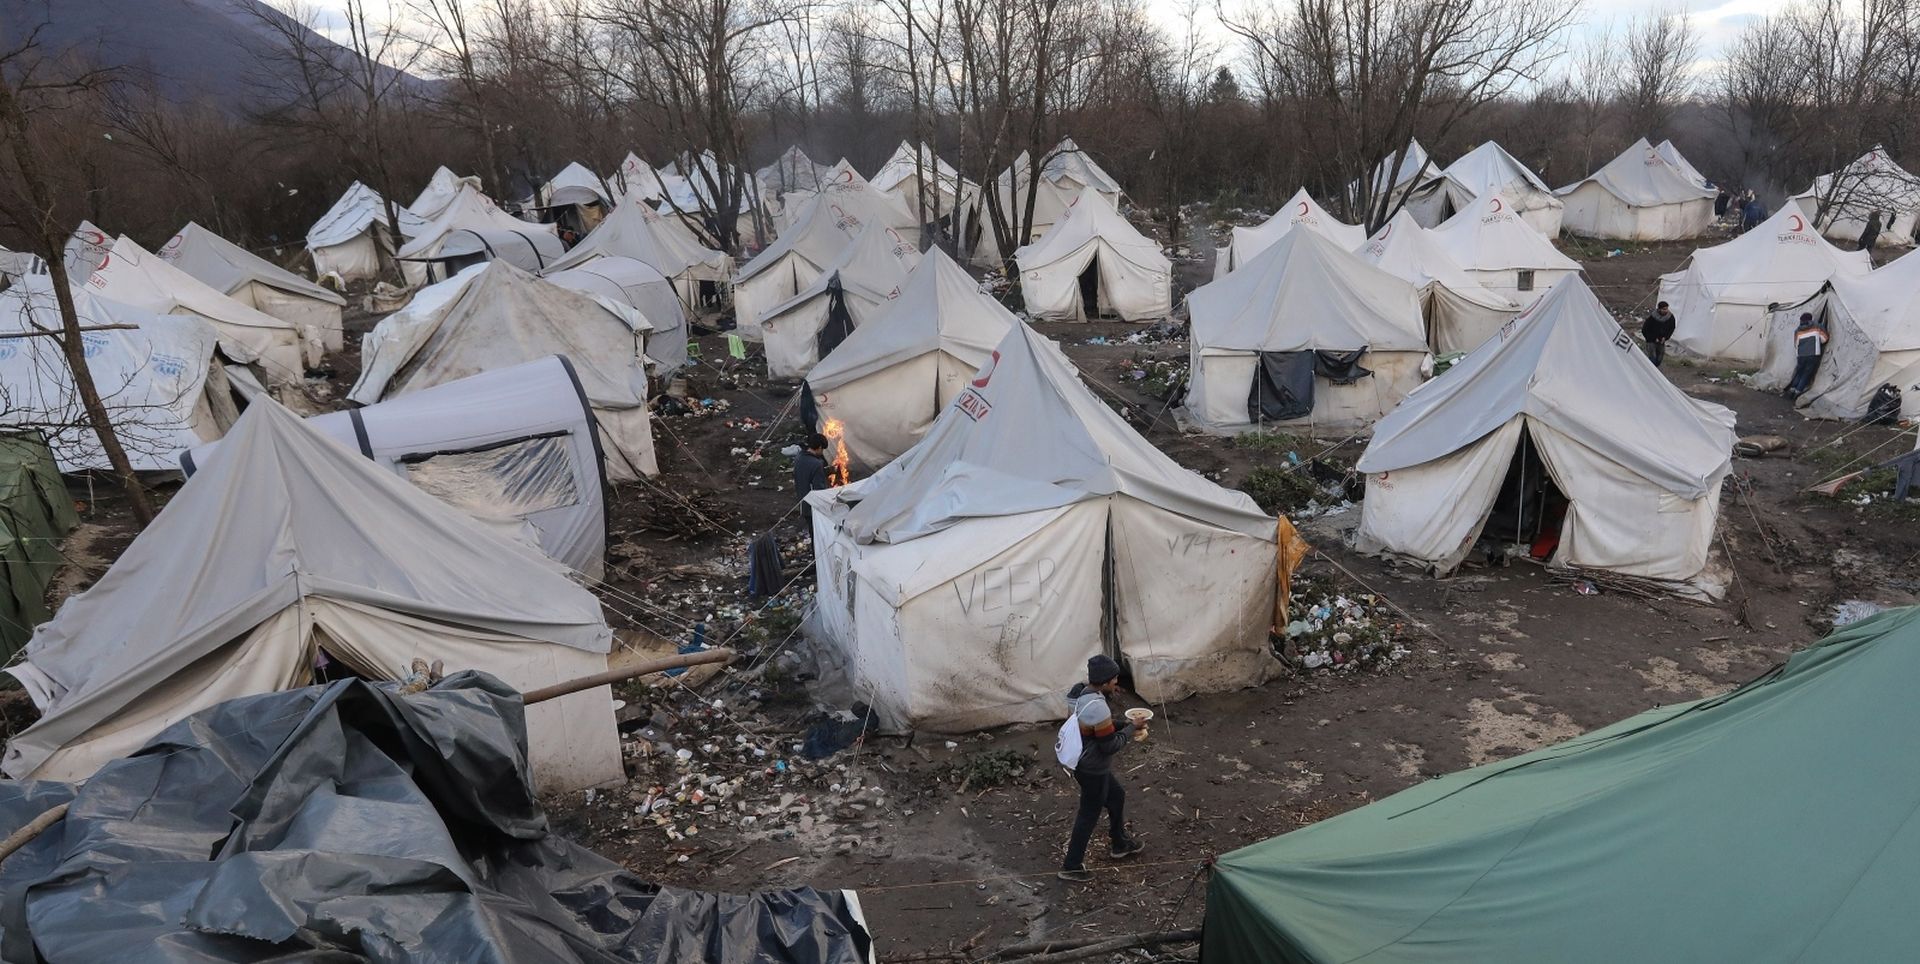 09.12.2019., Bihac - Izbjeglicki kamp na Vucjaku, migranti cekaju odluku Kantonalnih vlasti o preseljenju na novu lokaciju. Photo: Robert Anic/PIXSELL